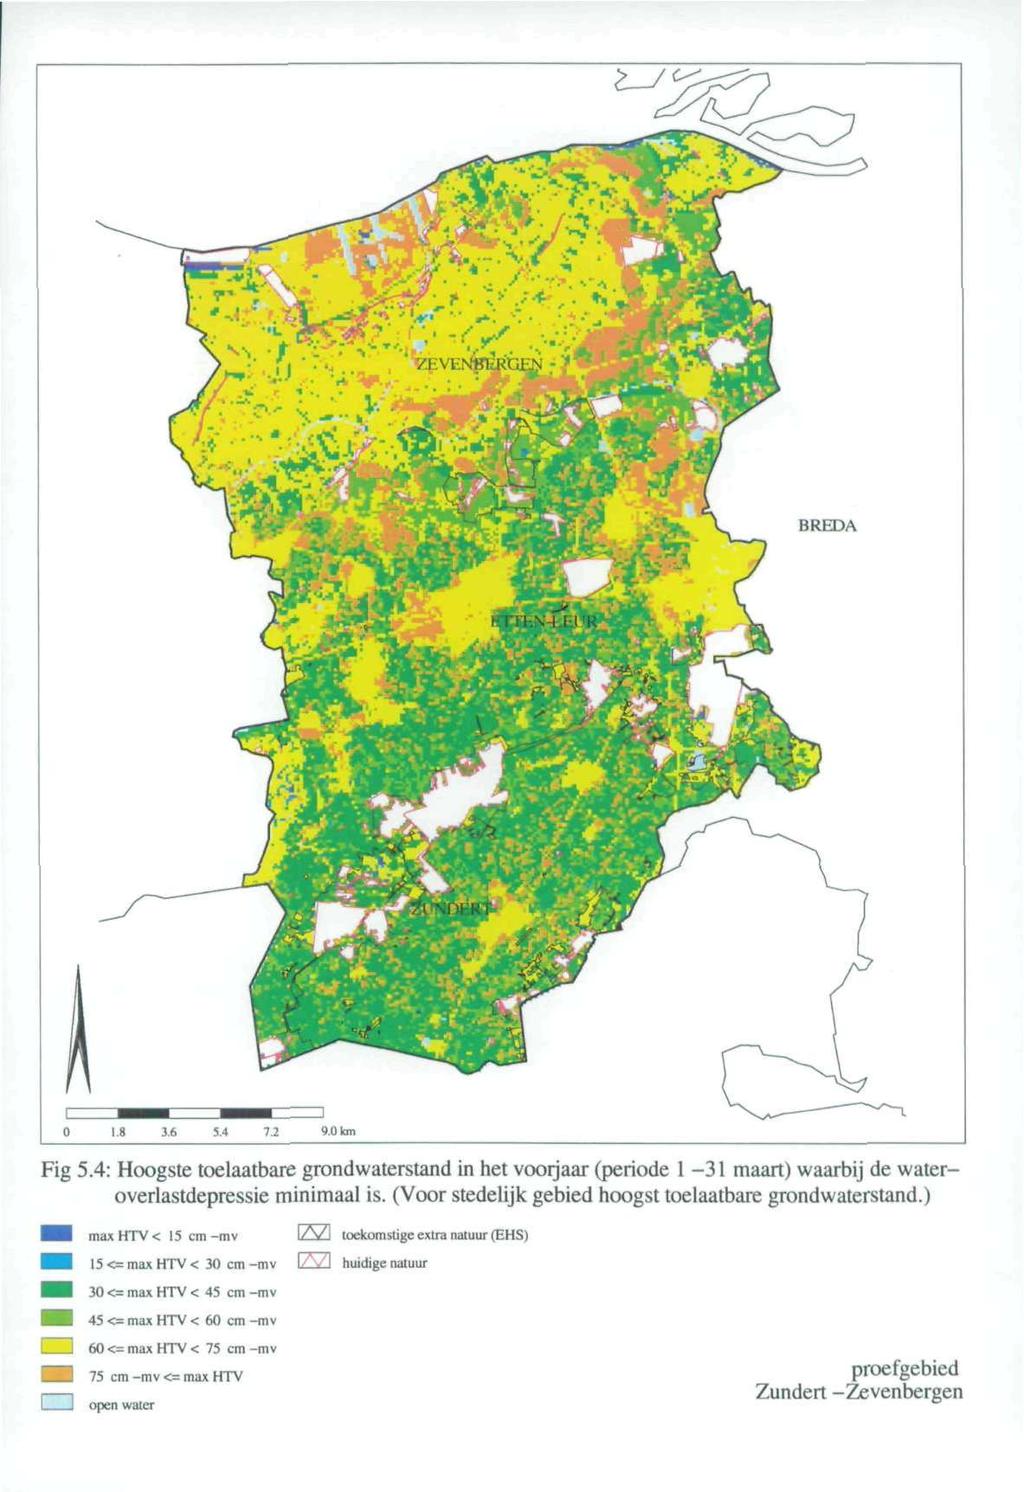 Fig 5.4: Hoogste toelaatbare grondwaterstand in het voorjaar (periode 1-31 maart) waarbij de wateroverlastdepressie minimaal is. (Voor stedelijk gebied hoogst toelaatbare grondwaterstand.